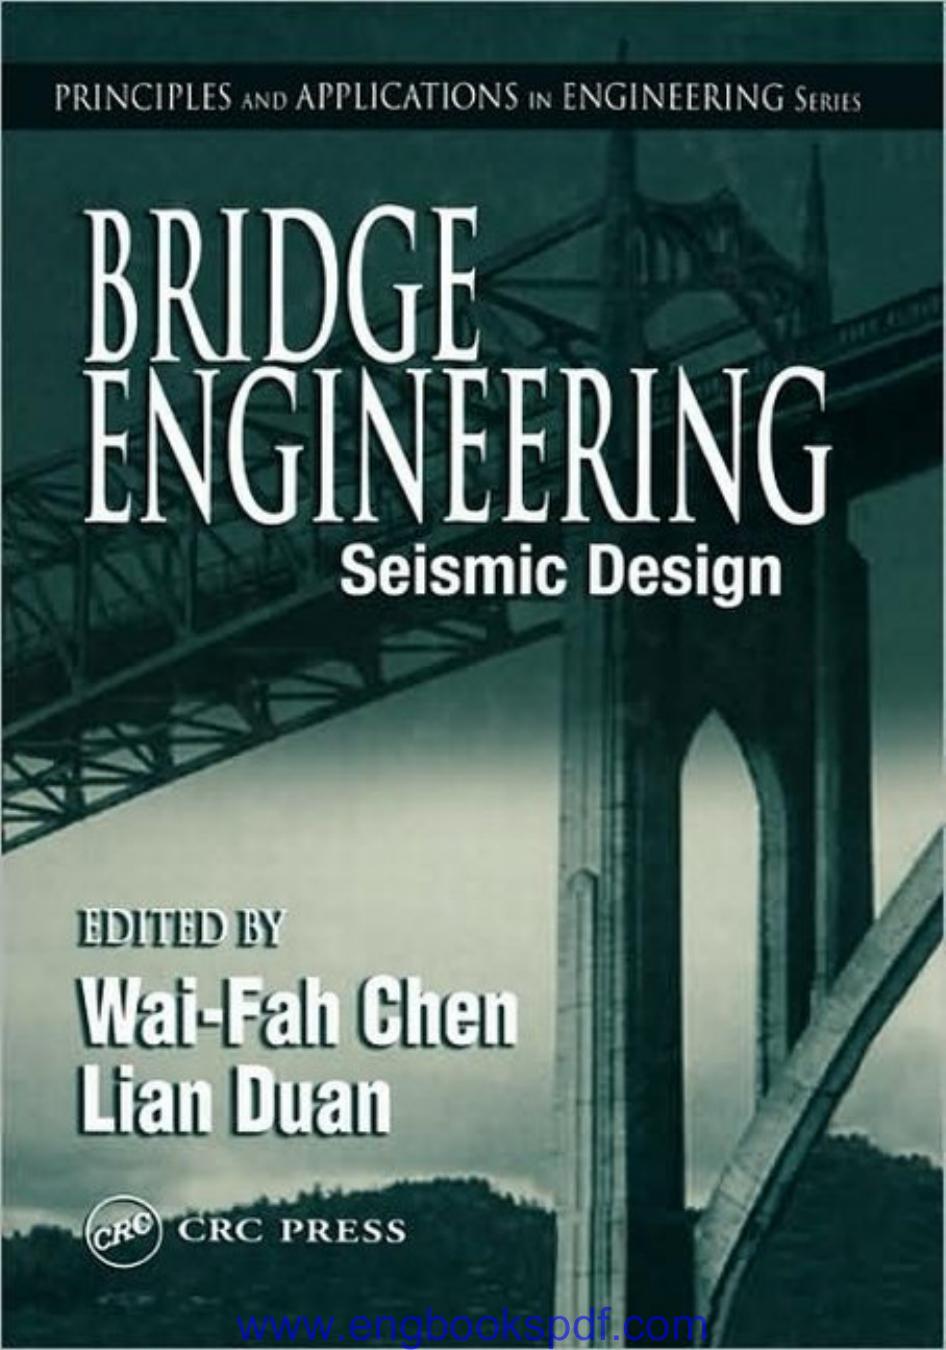 BRIDGE ENGINEERING: Seismic Design